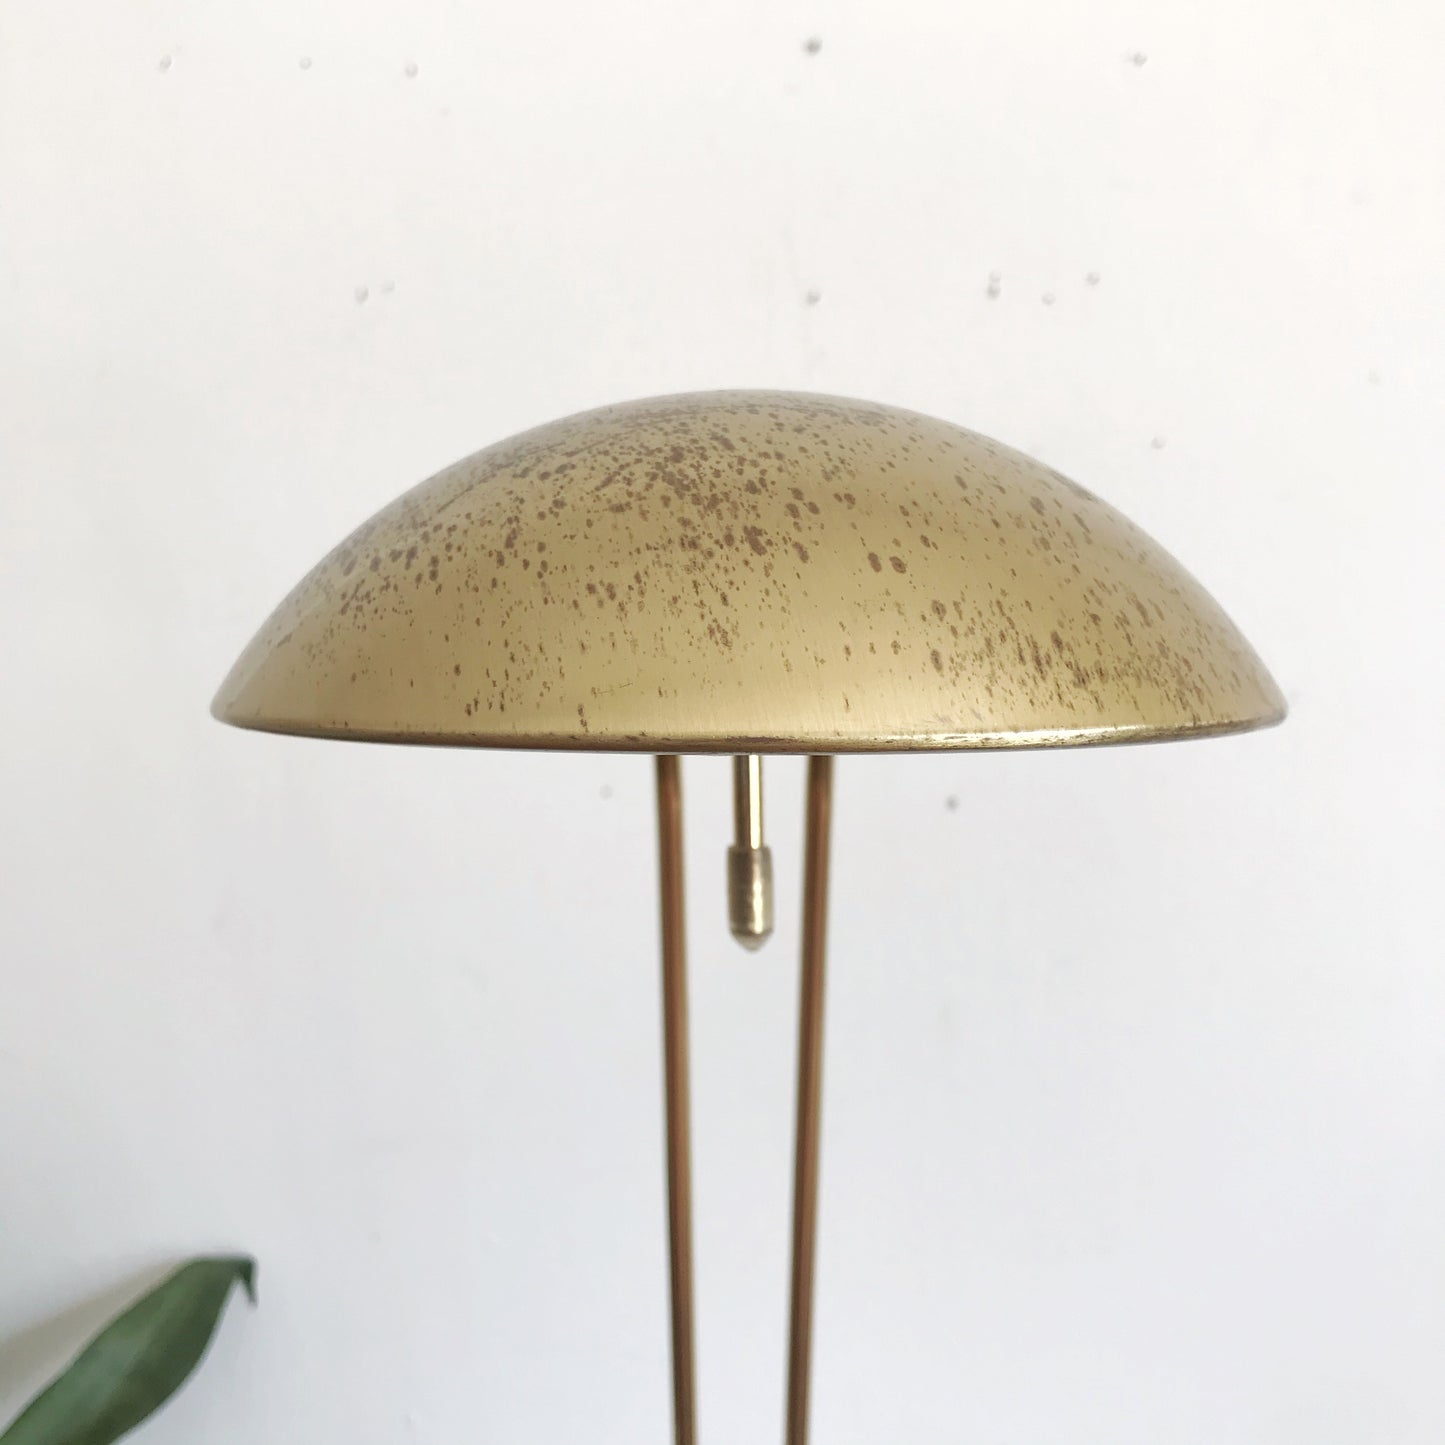 70's Vintage Gold Desk Lamp